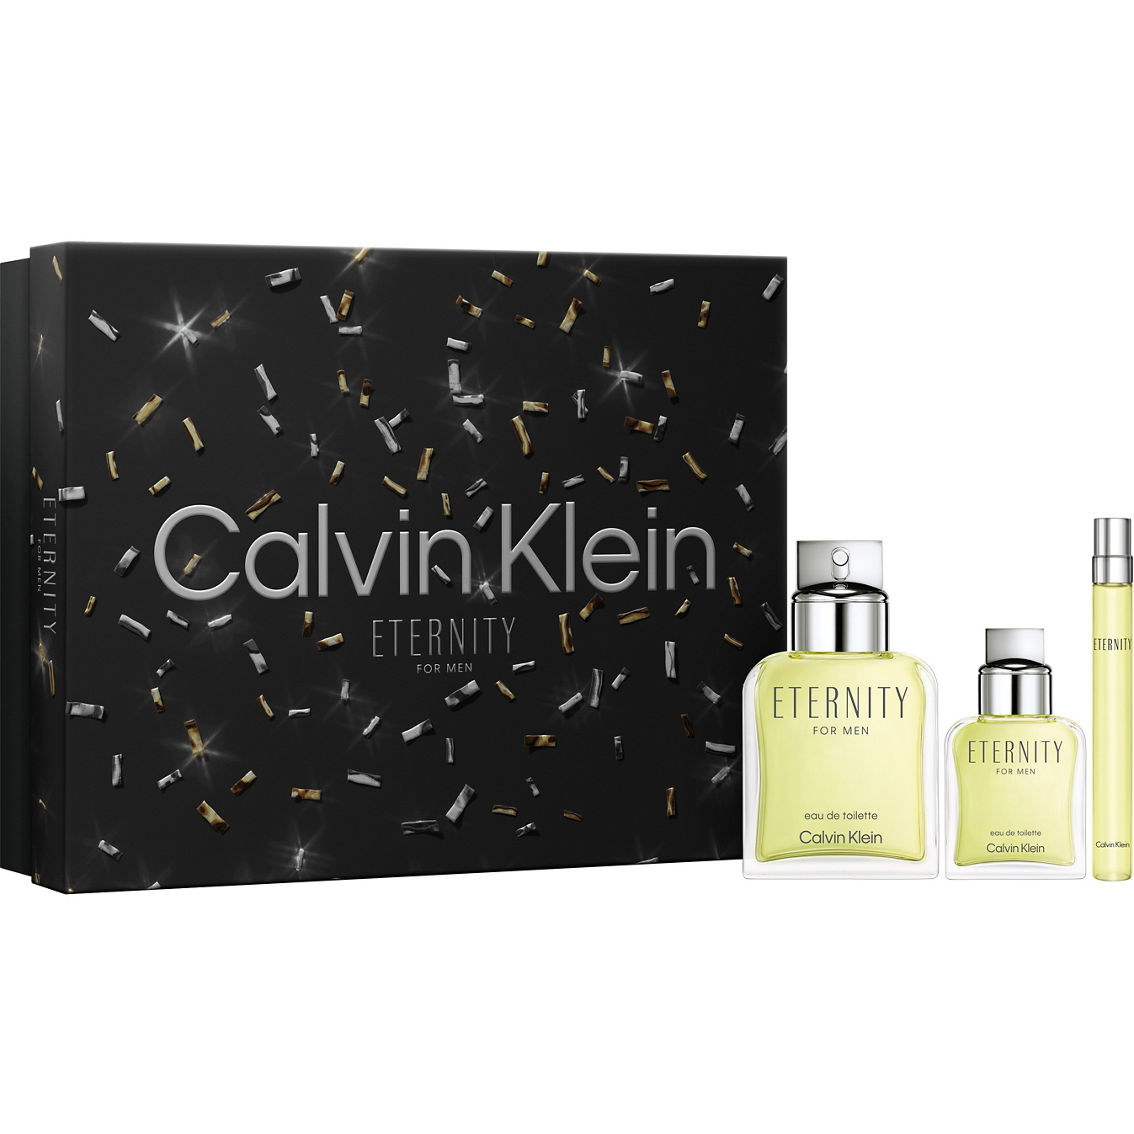 Calvin Klein Eternity For Men Eau De Toilette 3 Pc. Gift Set | Gifts ...